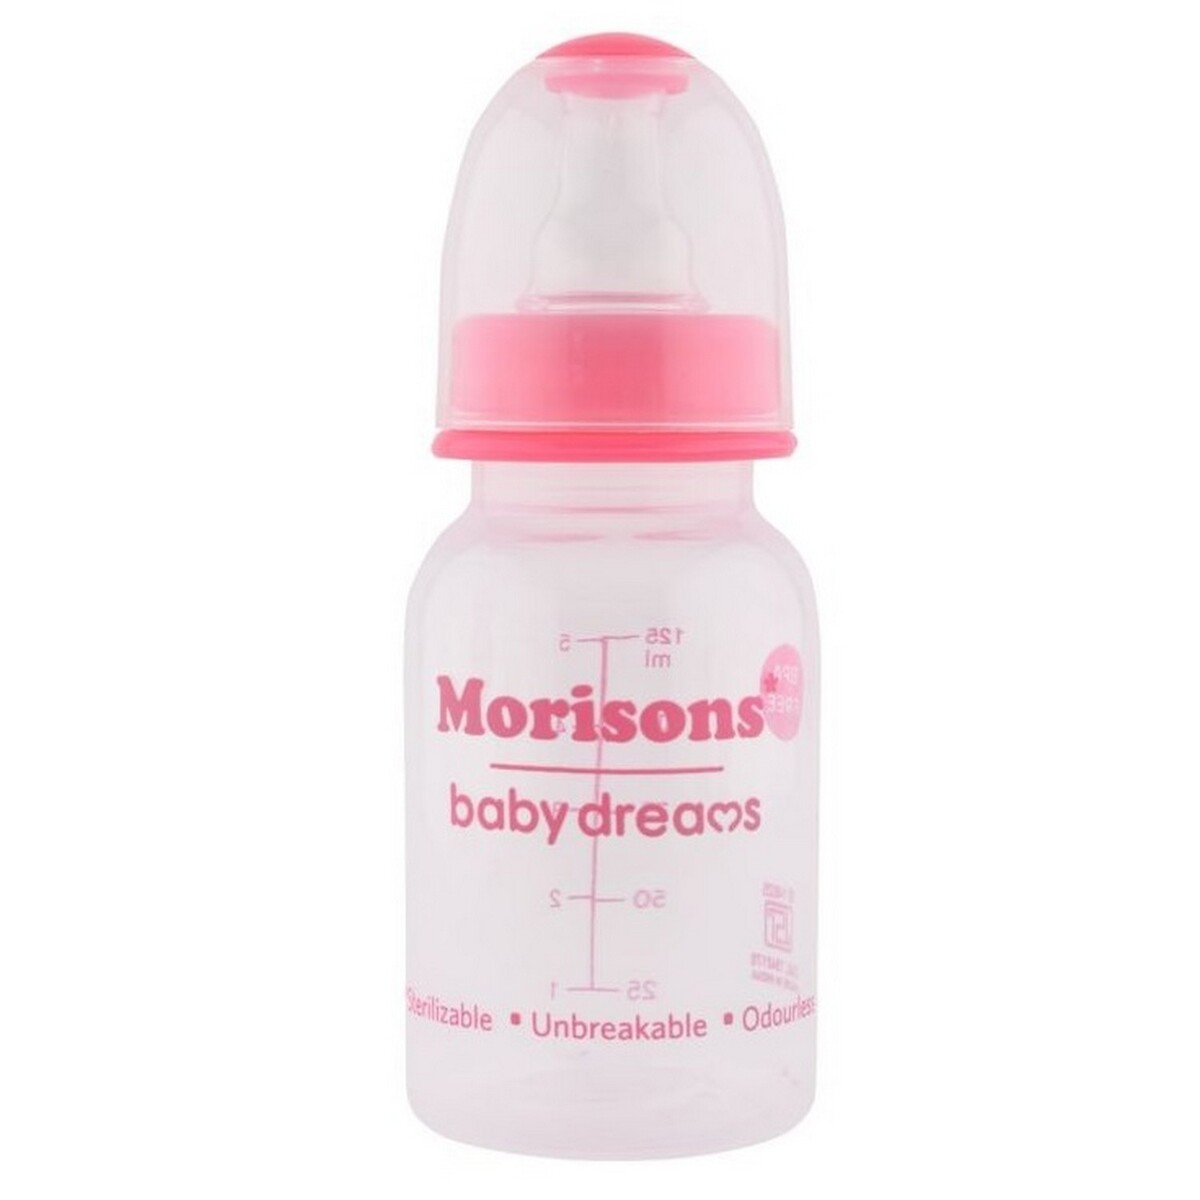 Morisons Baby Feeding Bottle 125ml